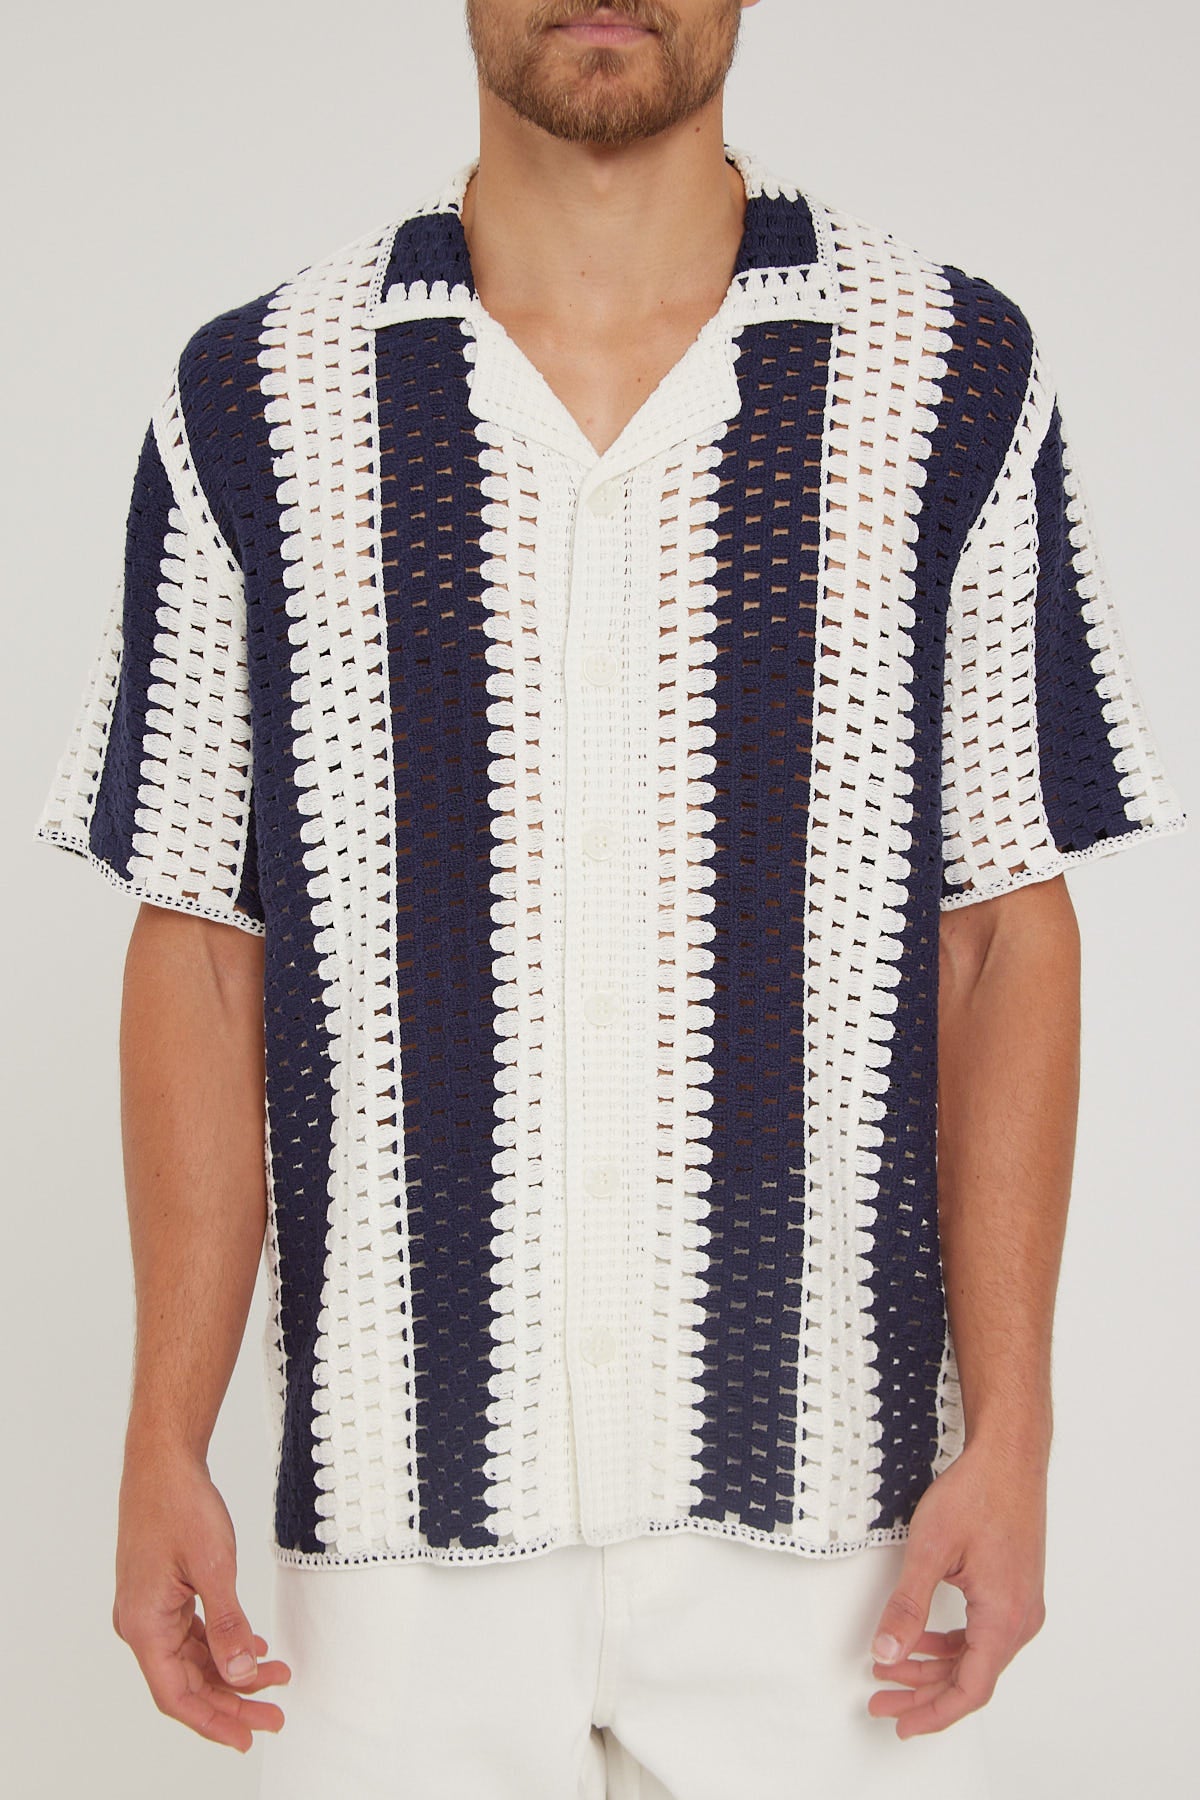 Common Need Sunday Crochet Resort Shirt Navy White – Universal Store